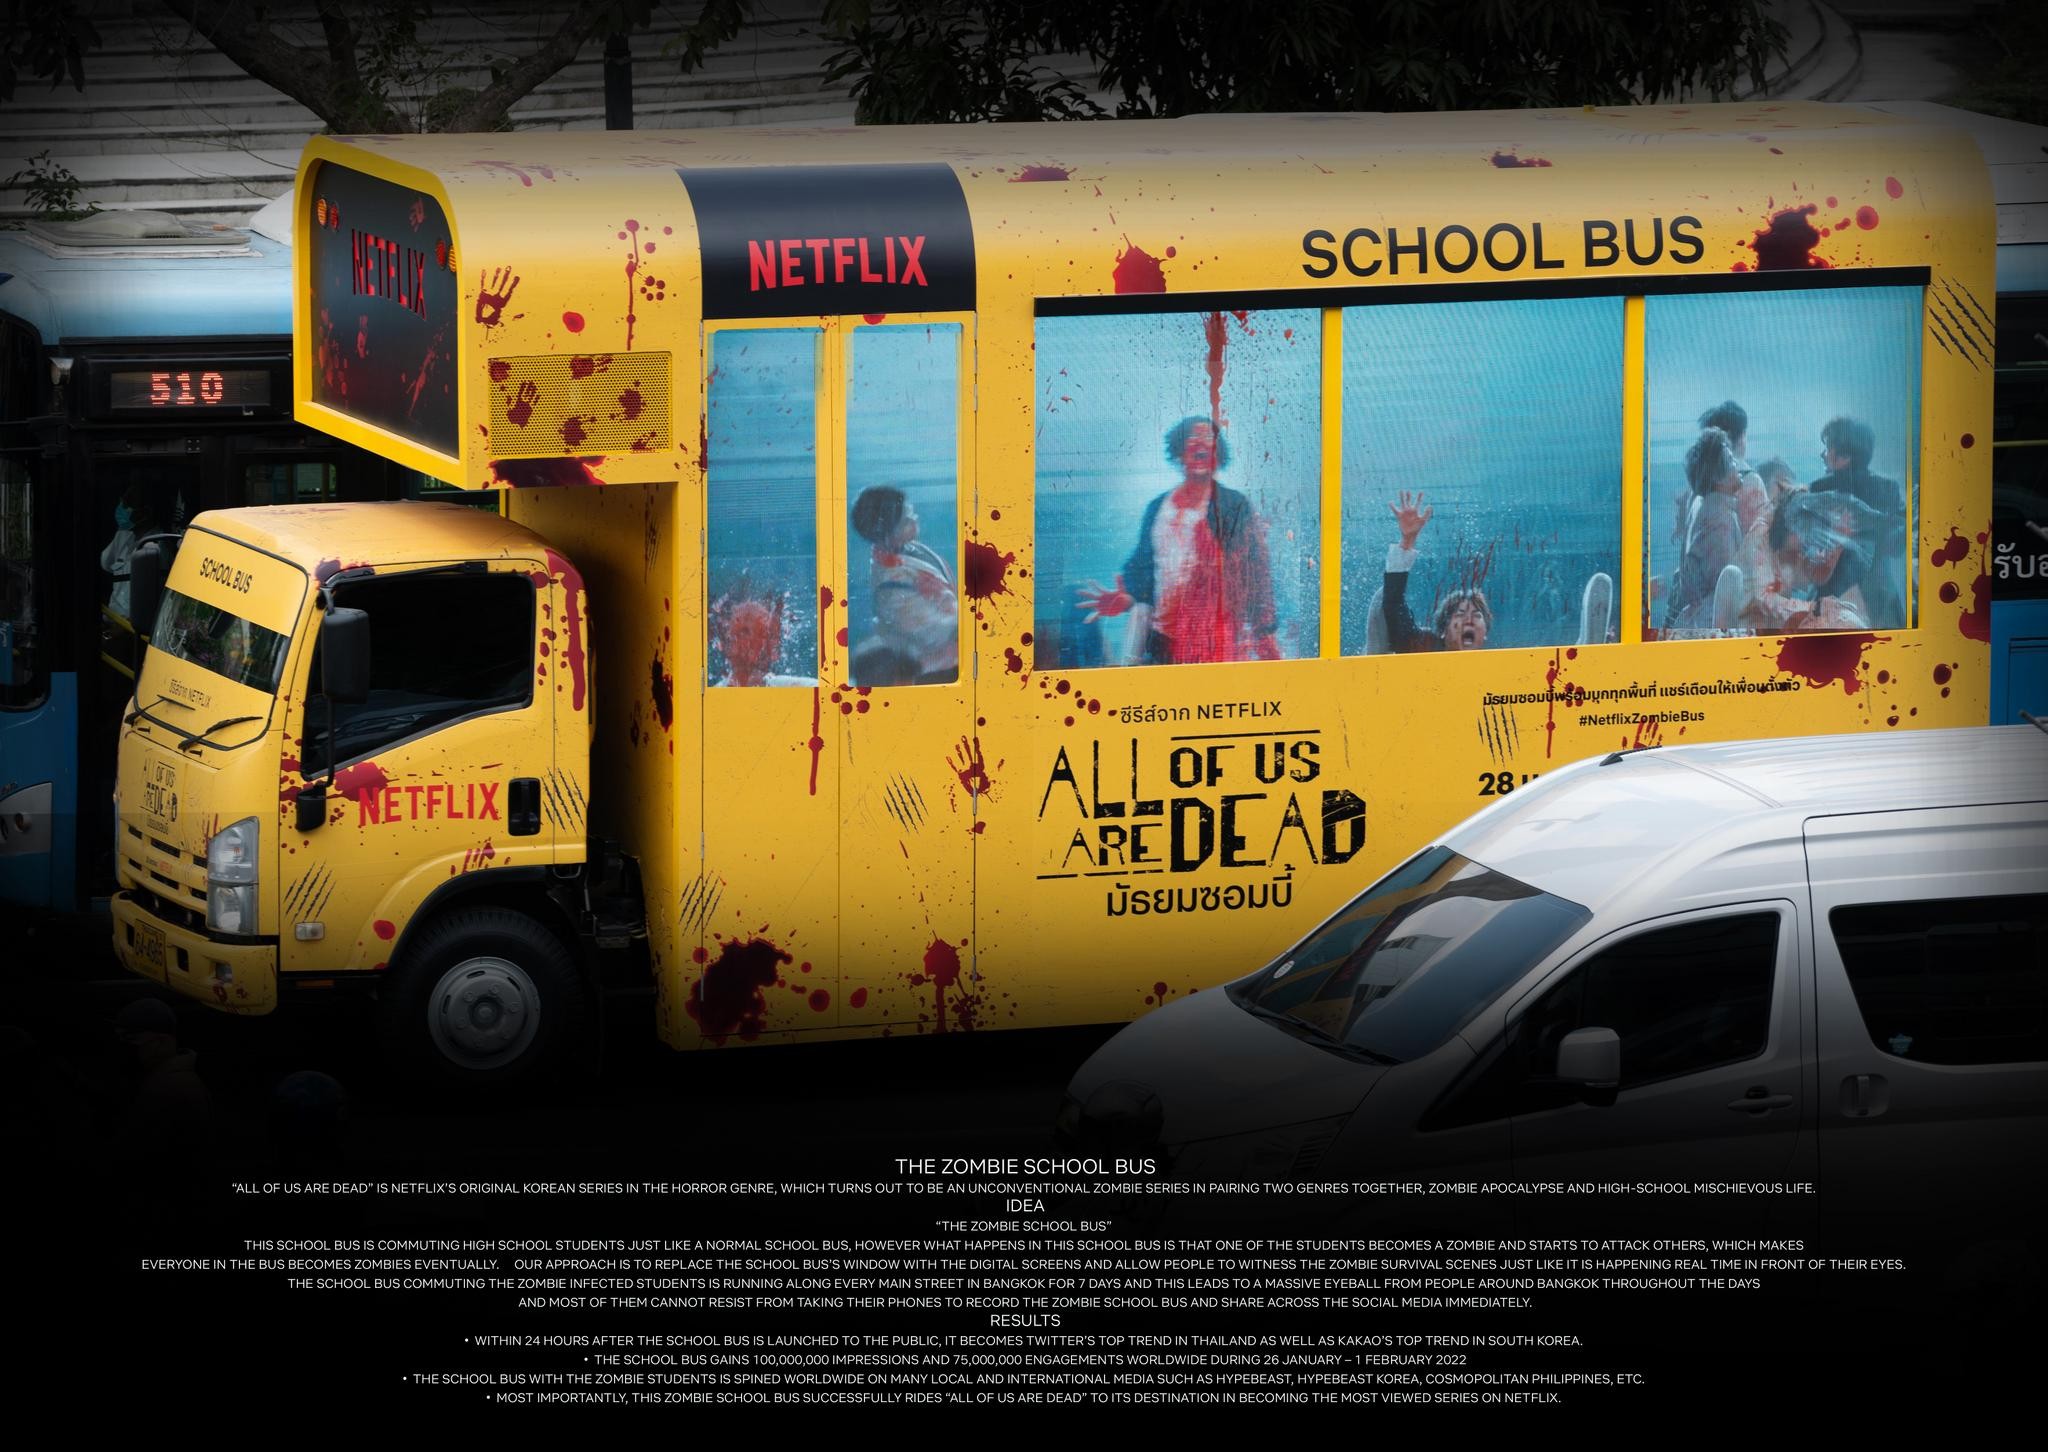 The Zombie School Bus